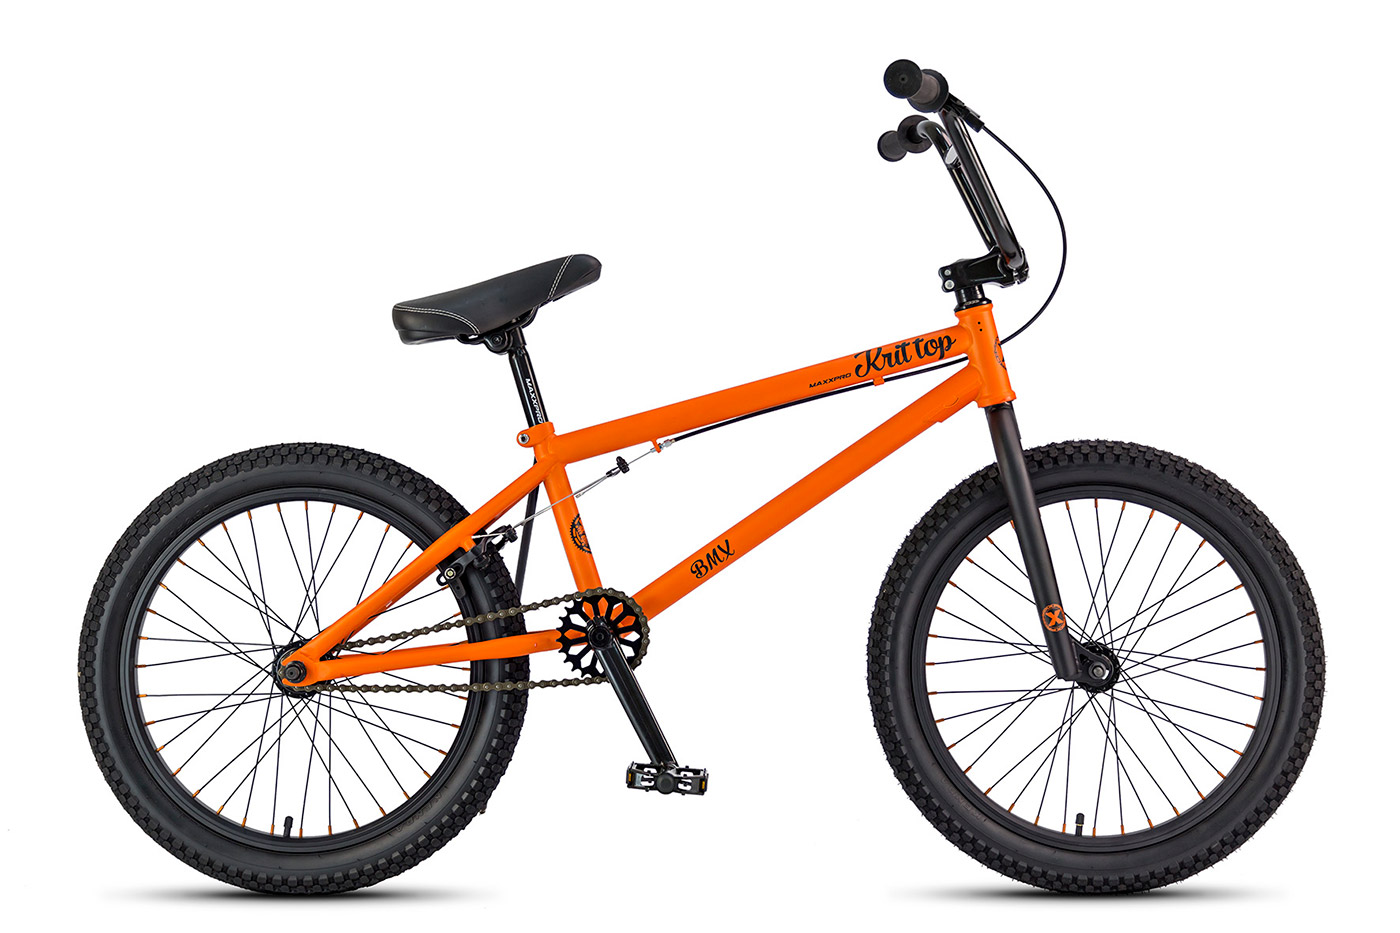 Велосипед MAXXPRO KRIT TOP, оранжево-чёрный